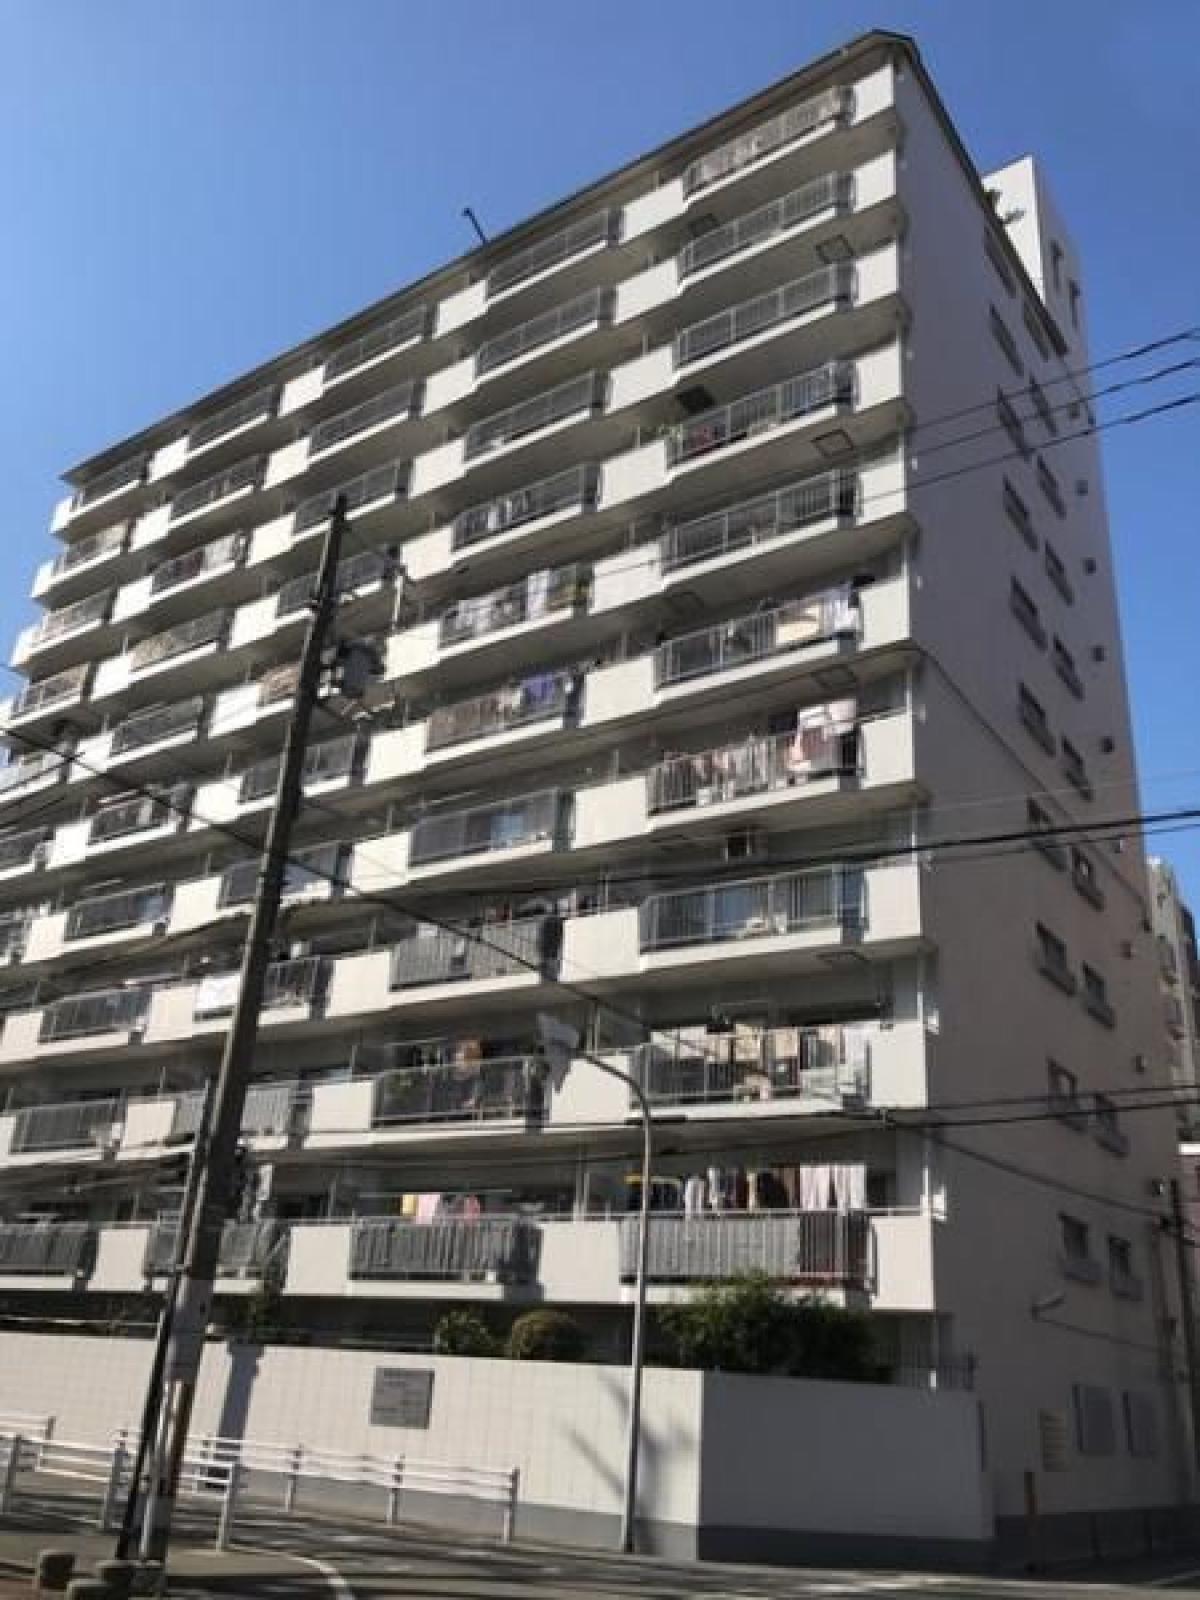 Picture of Apartment For Sale in Osaka Shi Fukushima Ku, Osaka, Japan